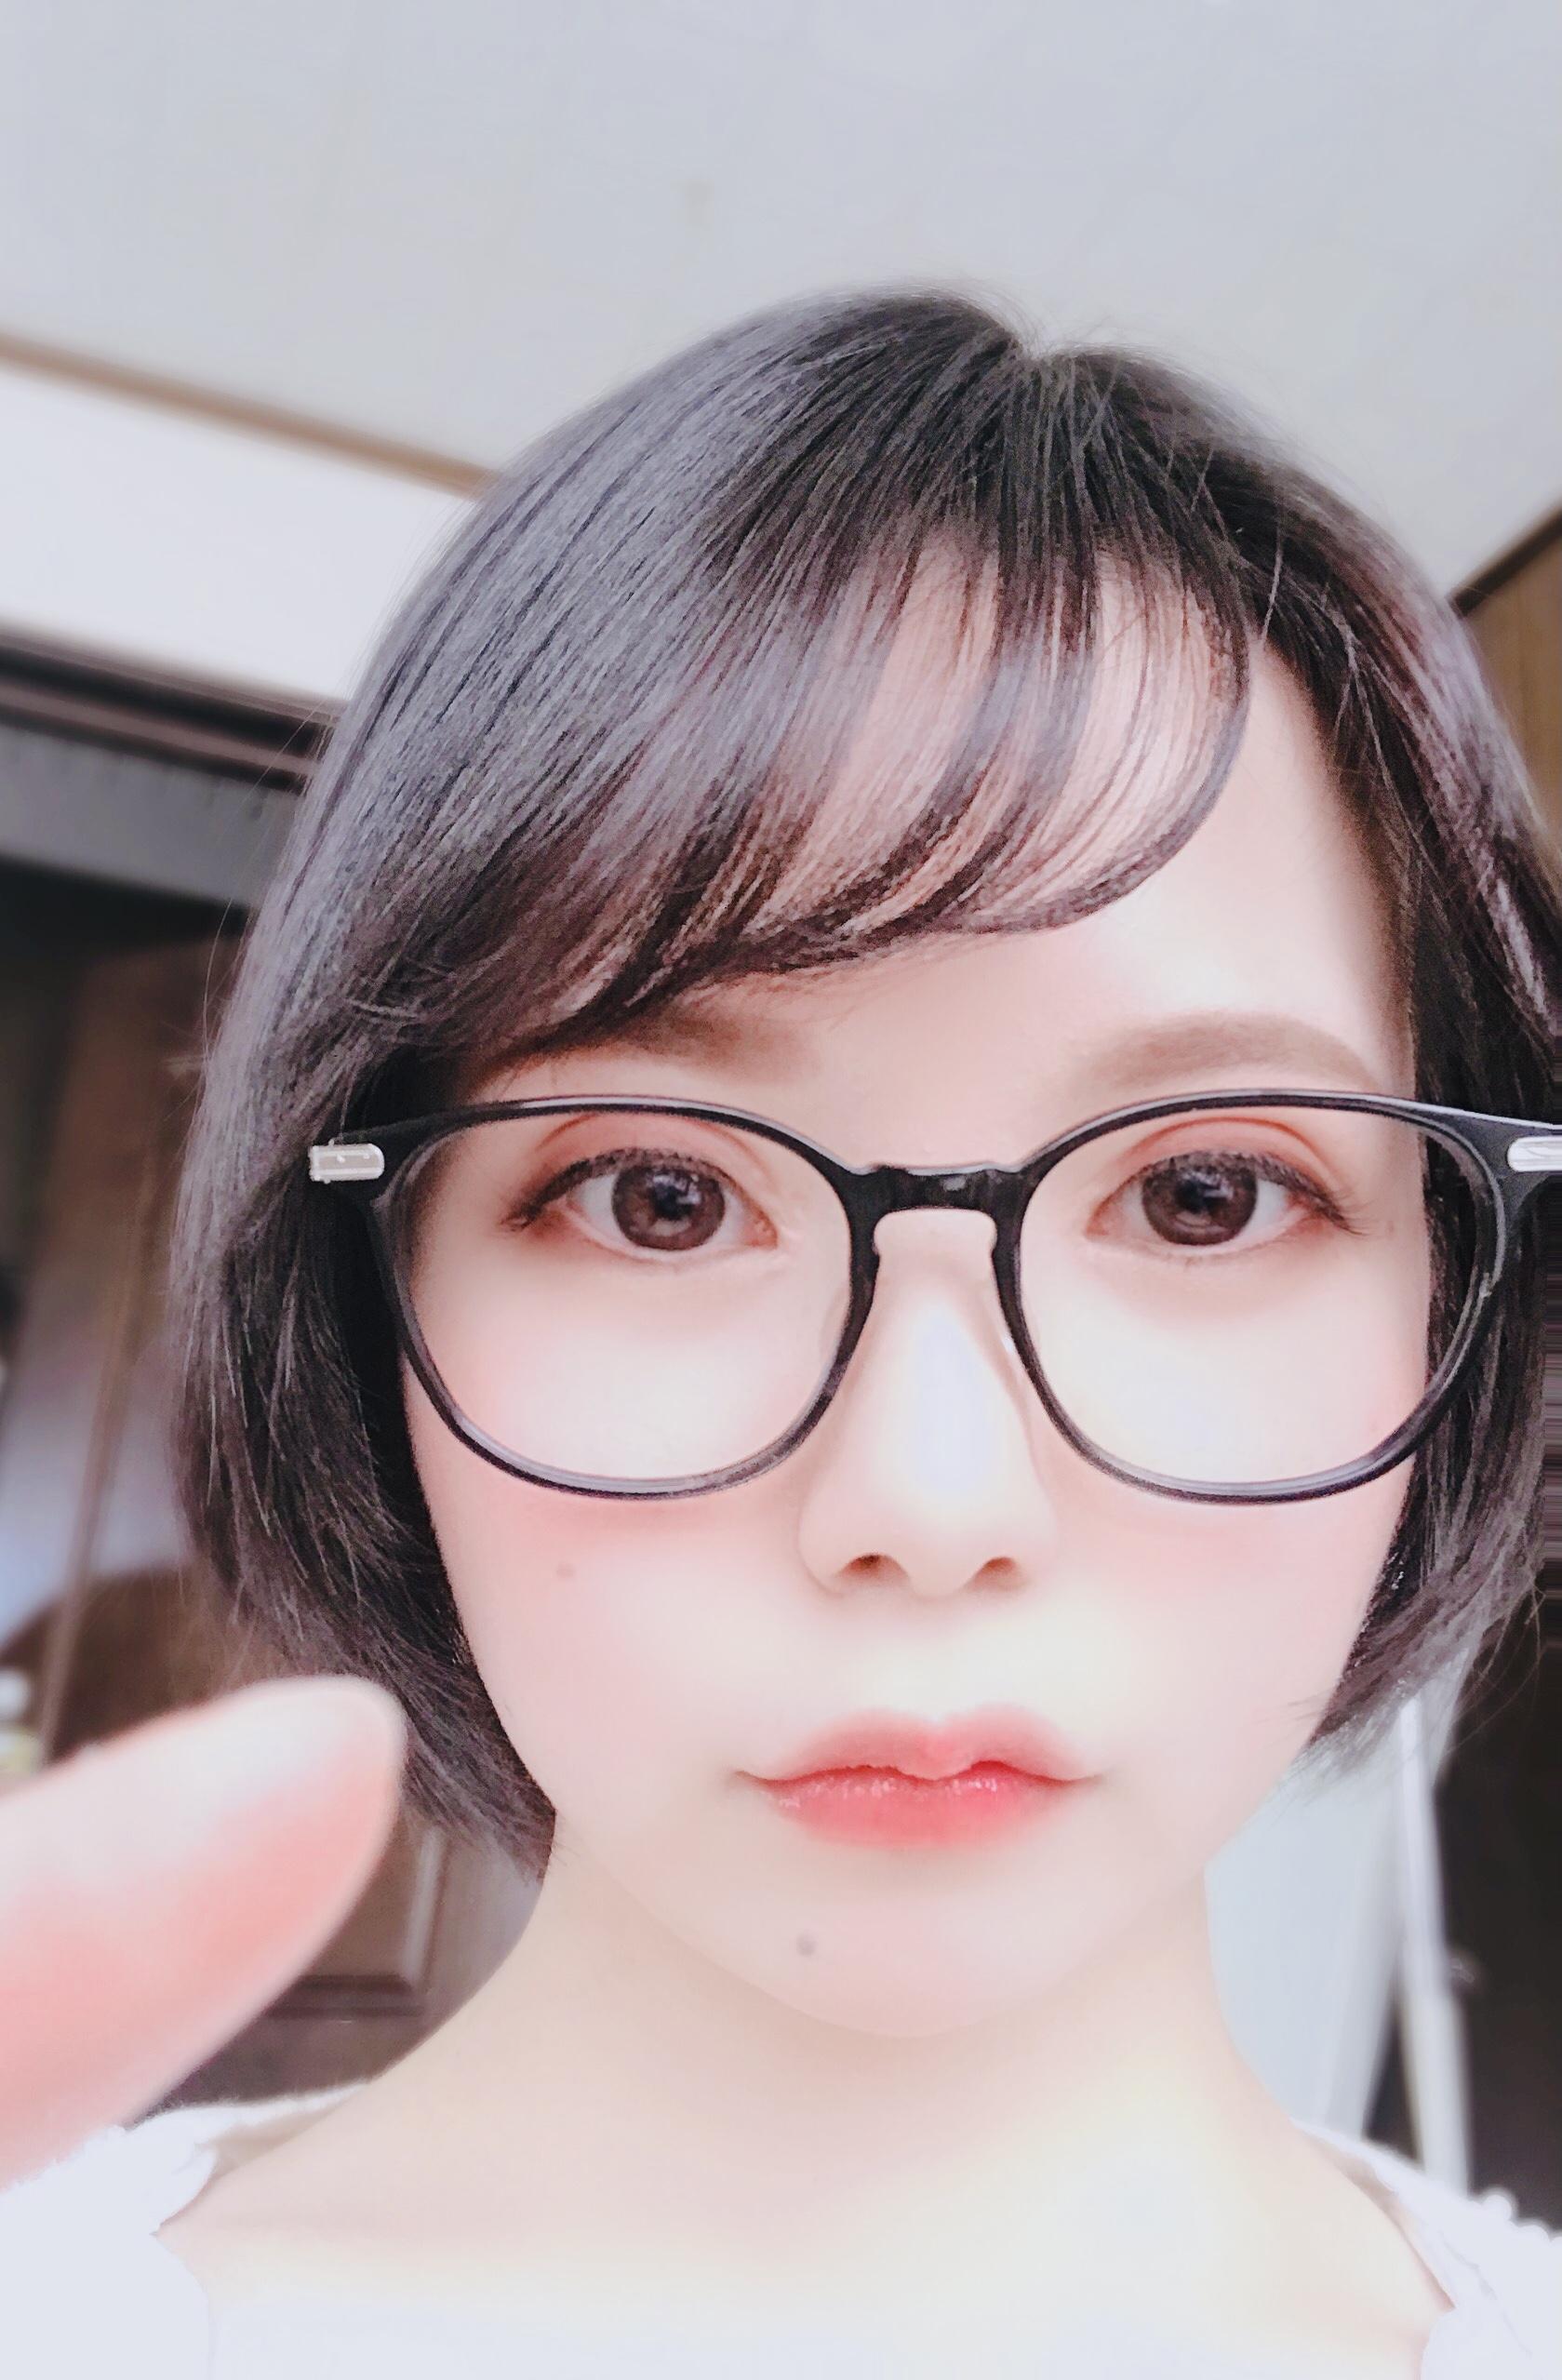 JUFE-267可爱的短发眼镜女孩初爱宁宁(初愛ねんね)，一脸稚气未脱很听话的乖乖女孩喜欢吗？